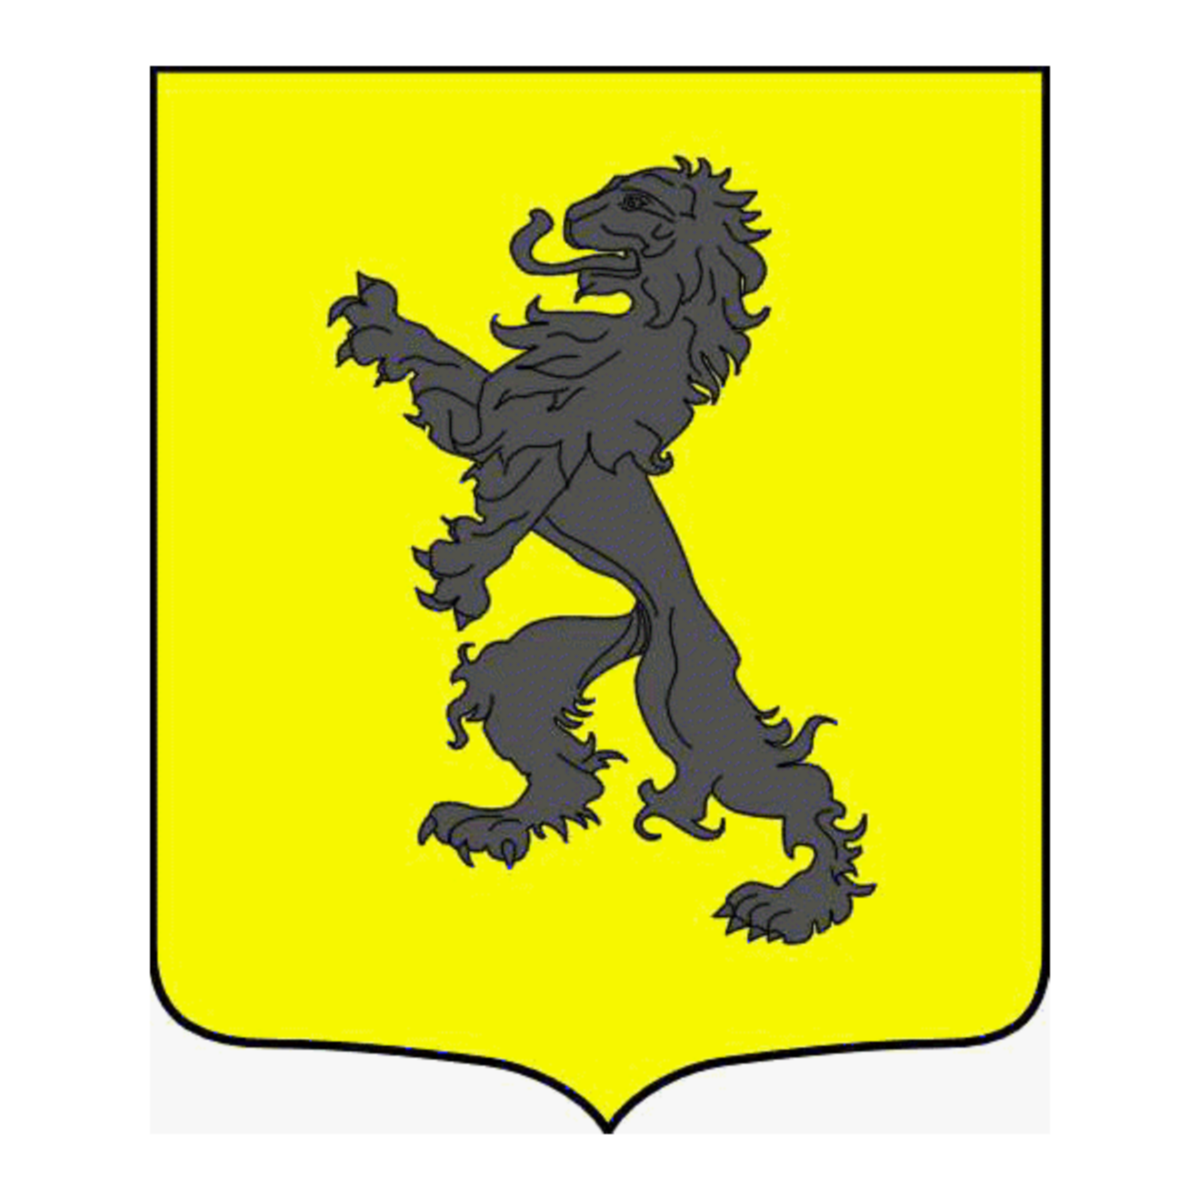 Wappen der Familie Leoni